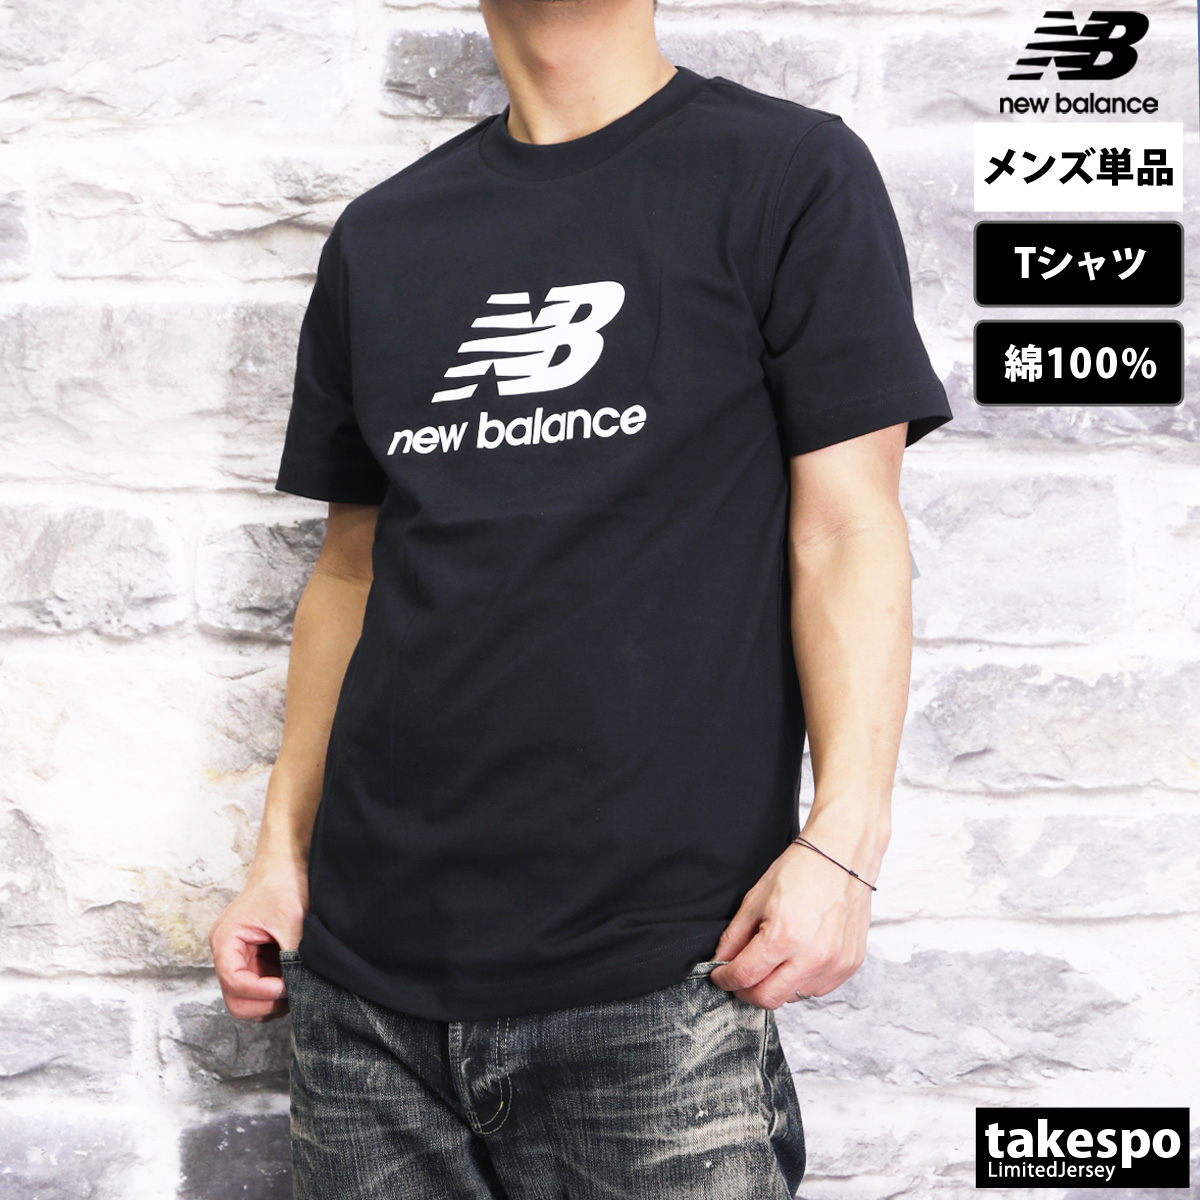 ニューバランス Tシャツ メンズ 上 newbalance ビッグロゴ 半袖 MT41502